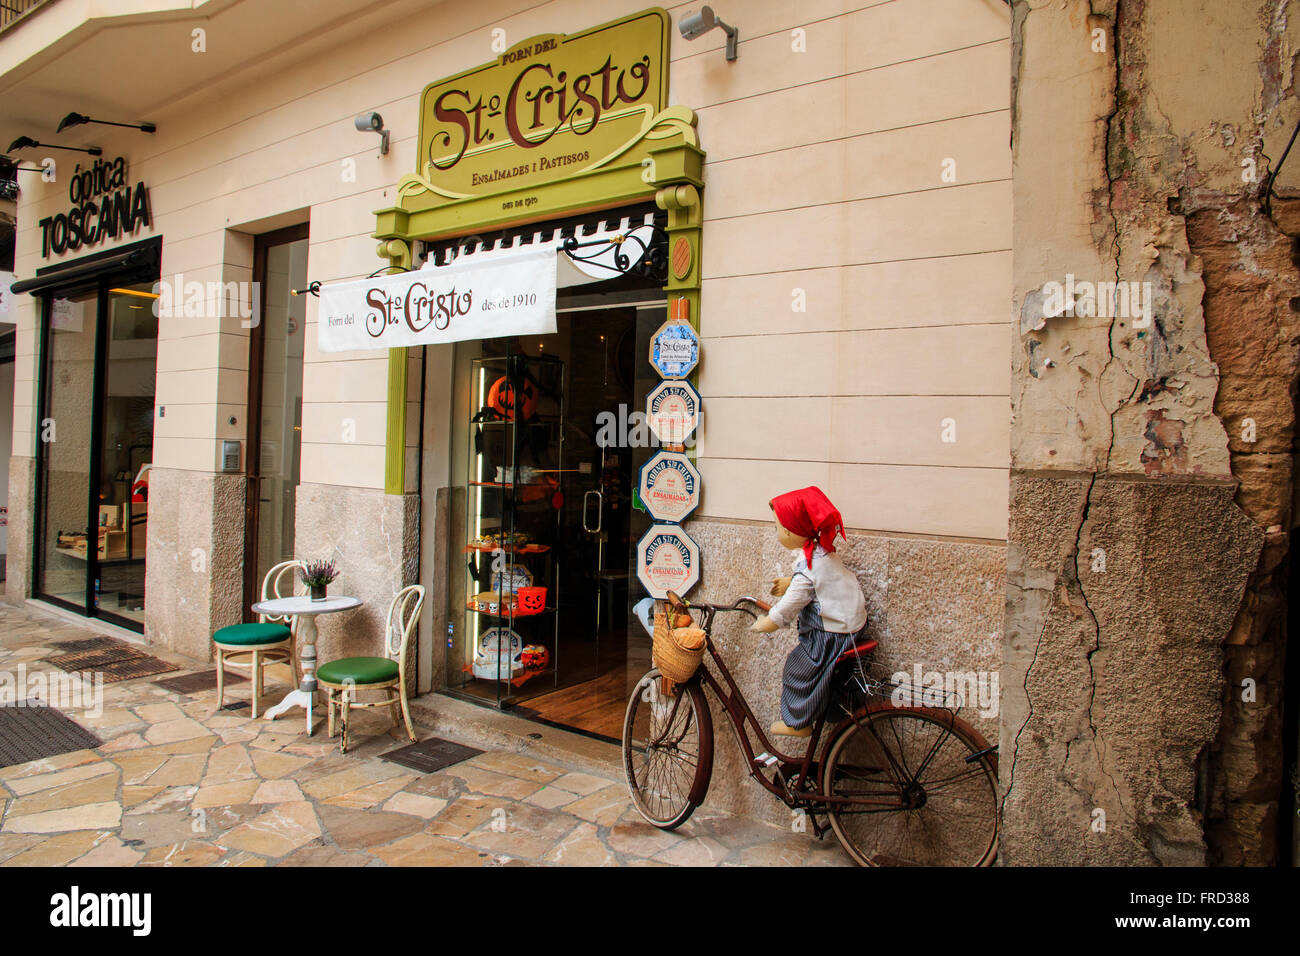 Palma de Mallorca, street scene della vita quotidiana. Negozio di fronte con il rosso in bicicletta e manichino. St Cristo Cafe vicino a Plaza d'Espana. Foto Stock